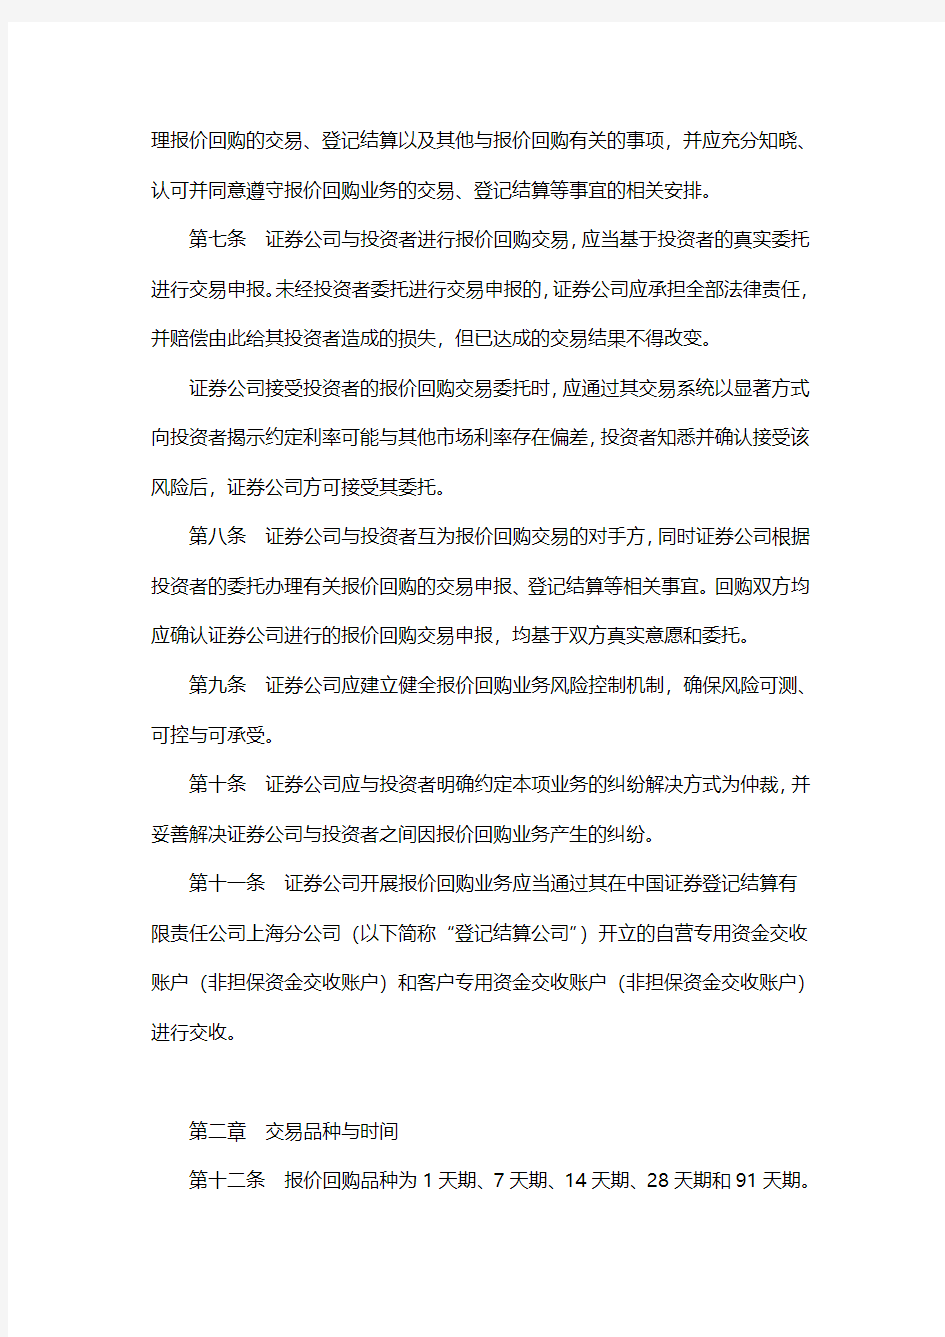 上海证券交易所债券质押式报价回购业务指引(试行)